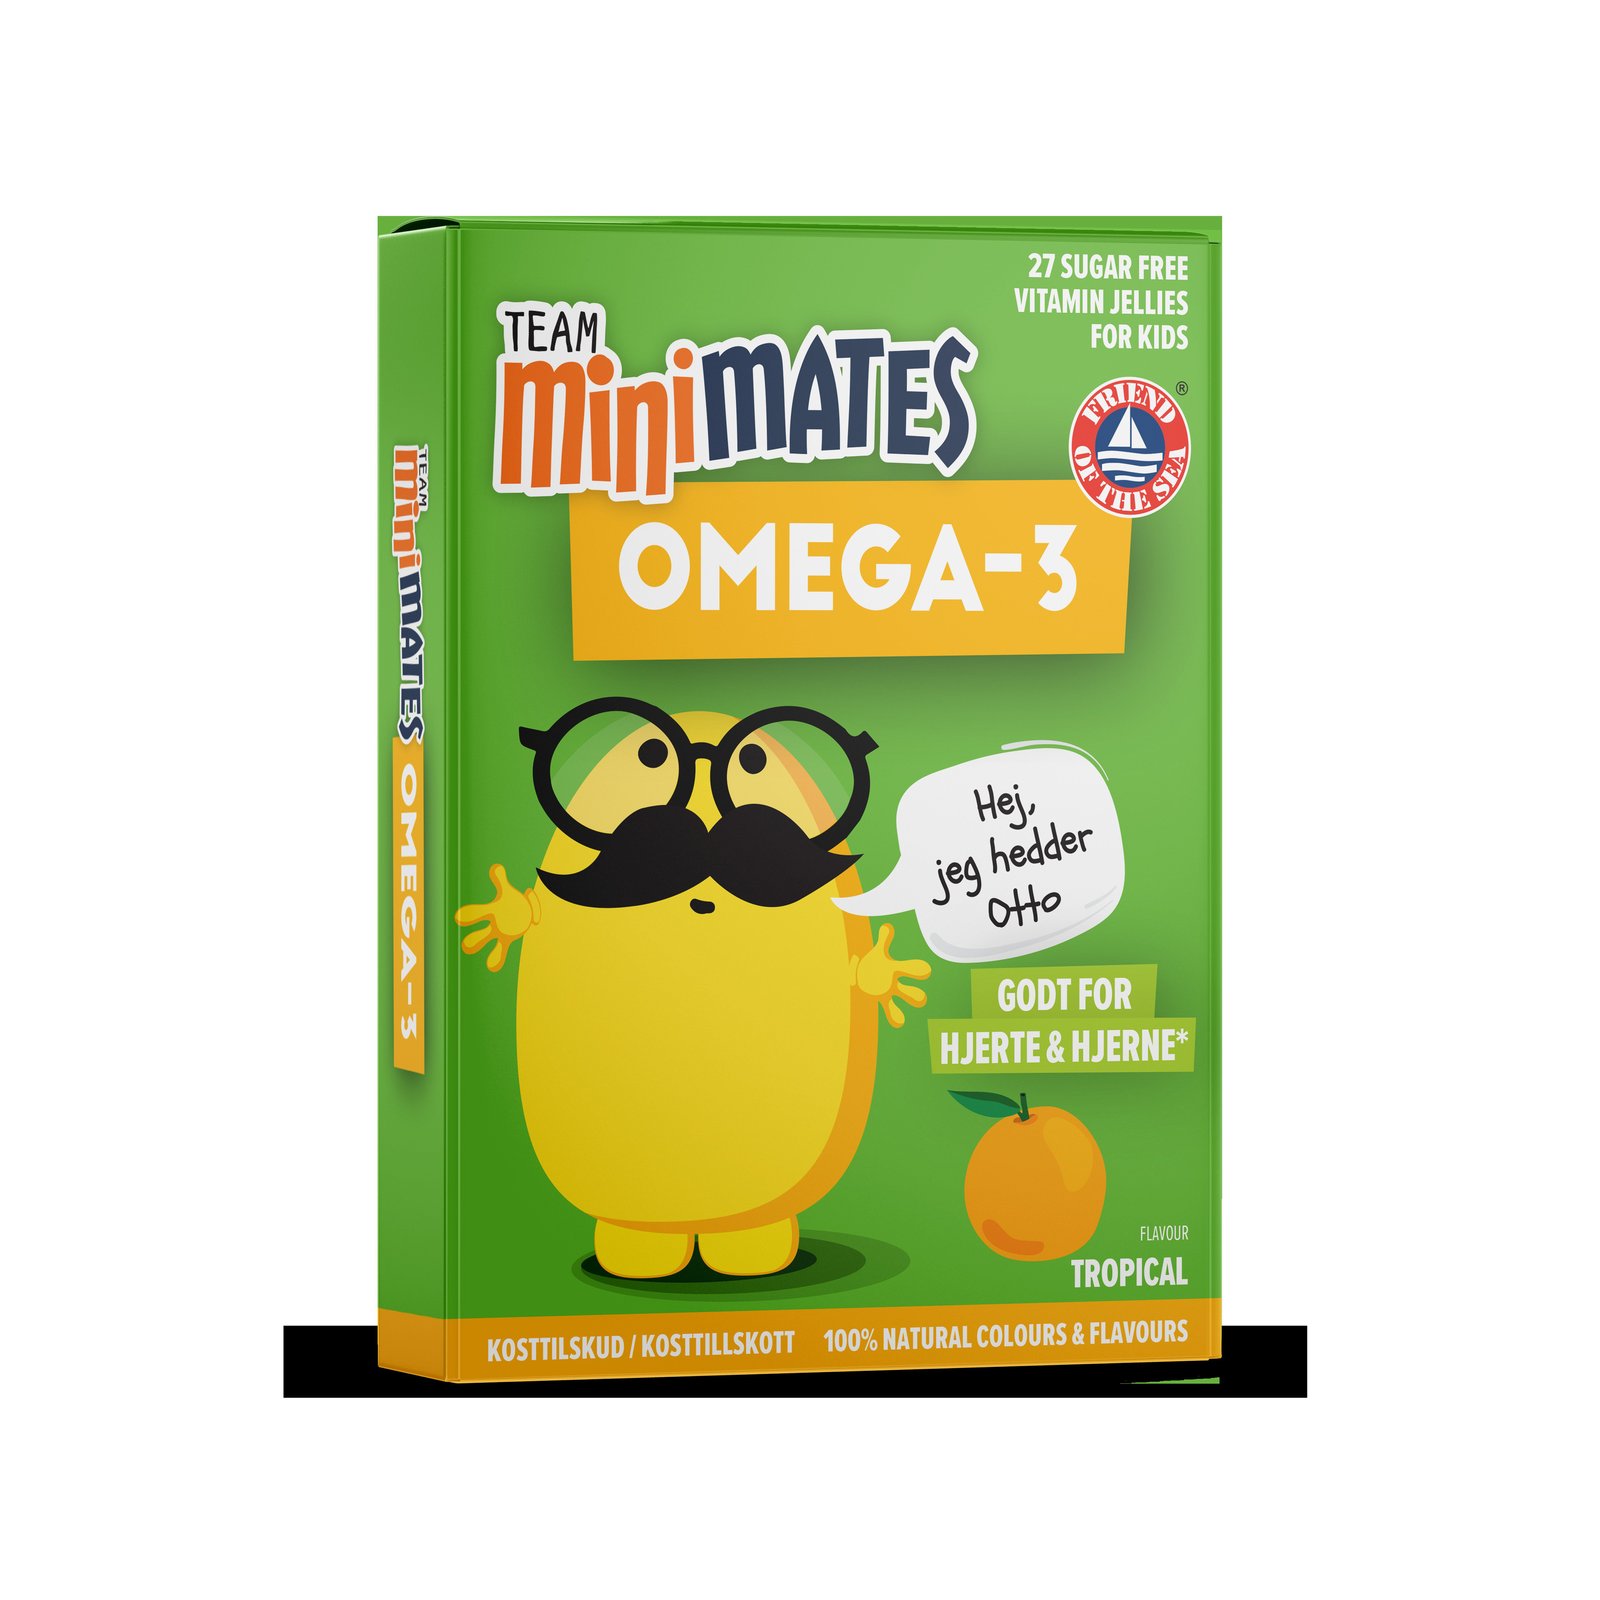 Team MiniMates Omega-3 Tropisk 27 tuggtabletter